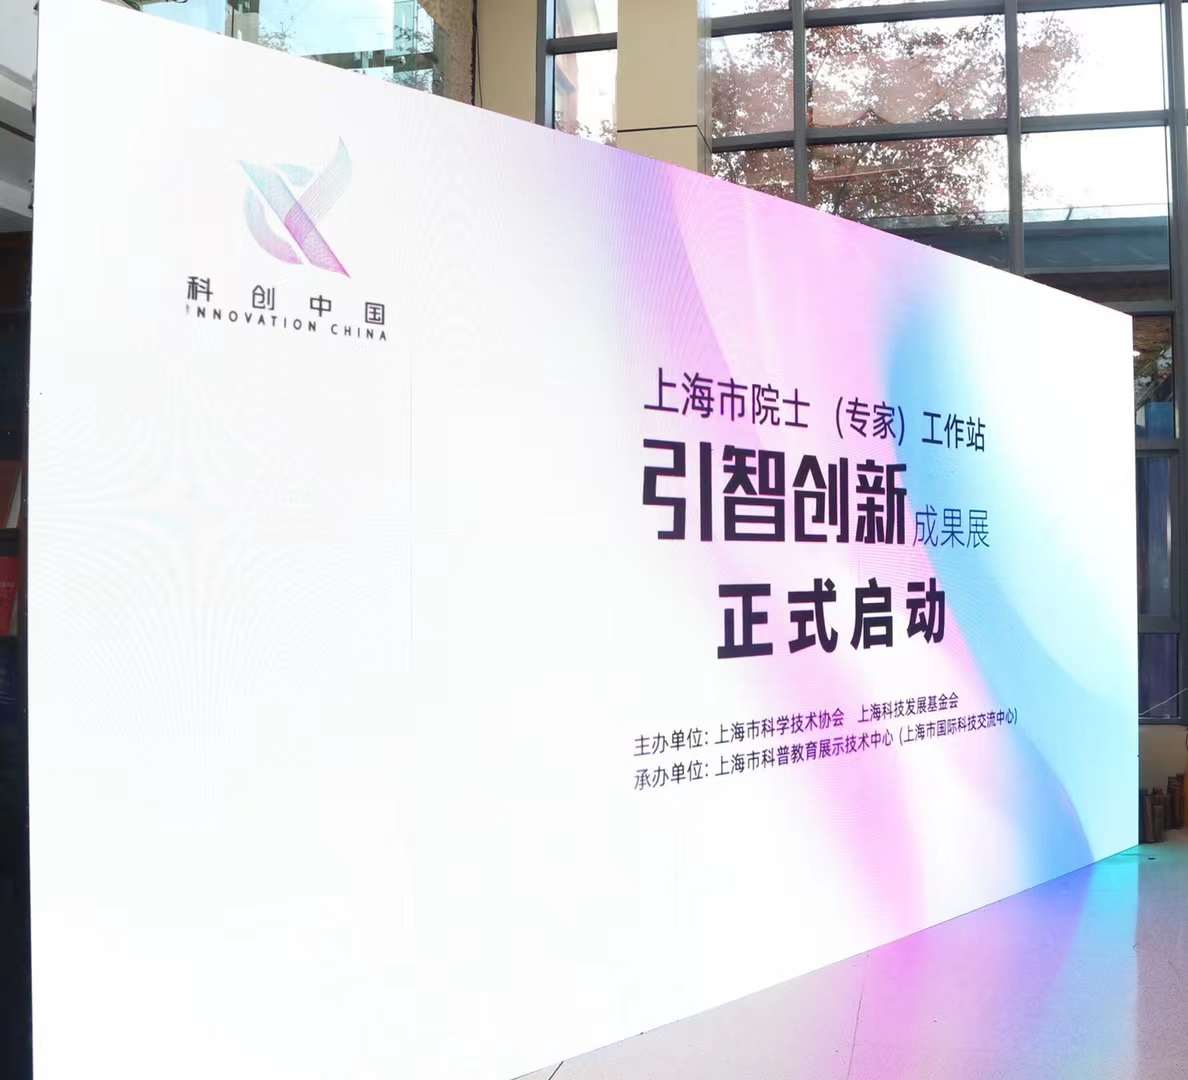 上海市院士（專家）工作站引智創新成果展